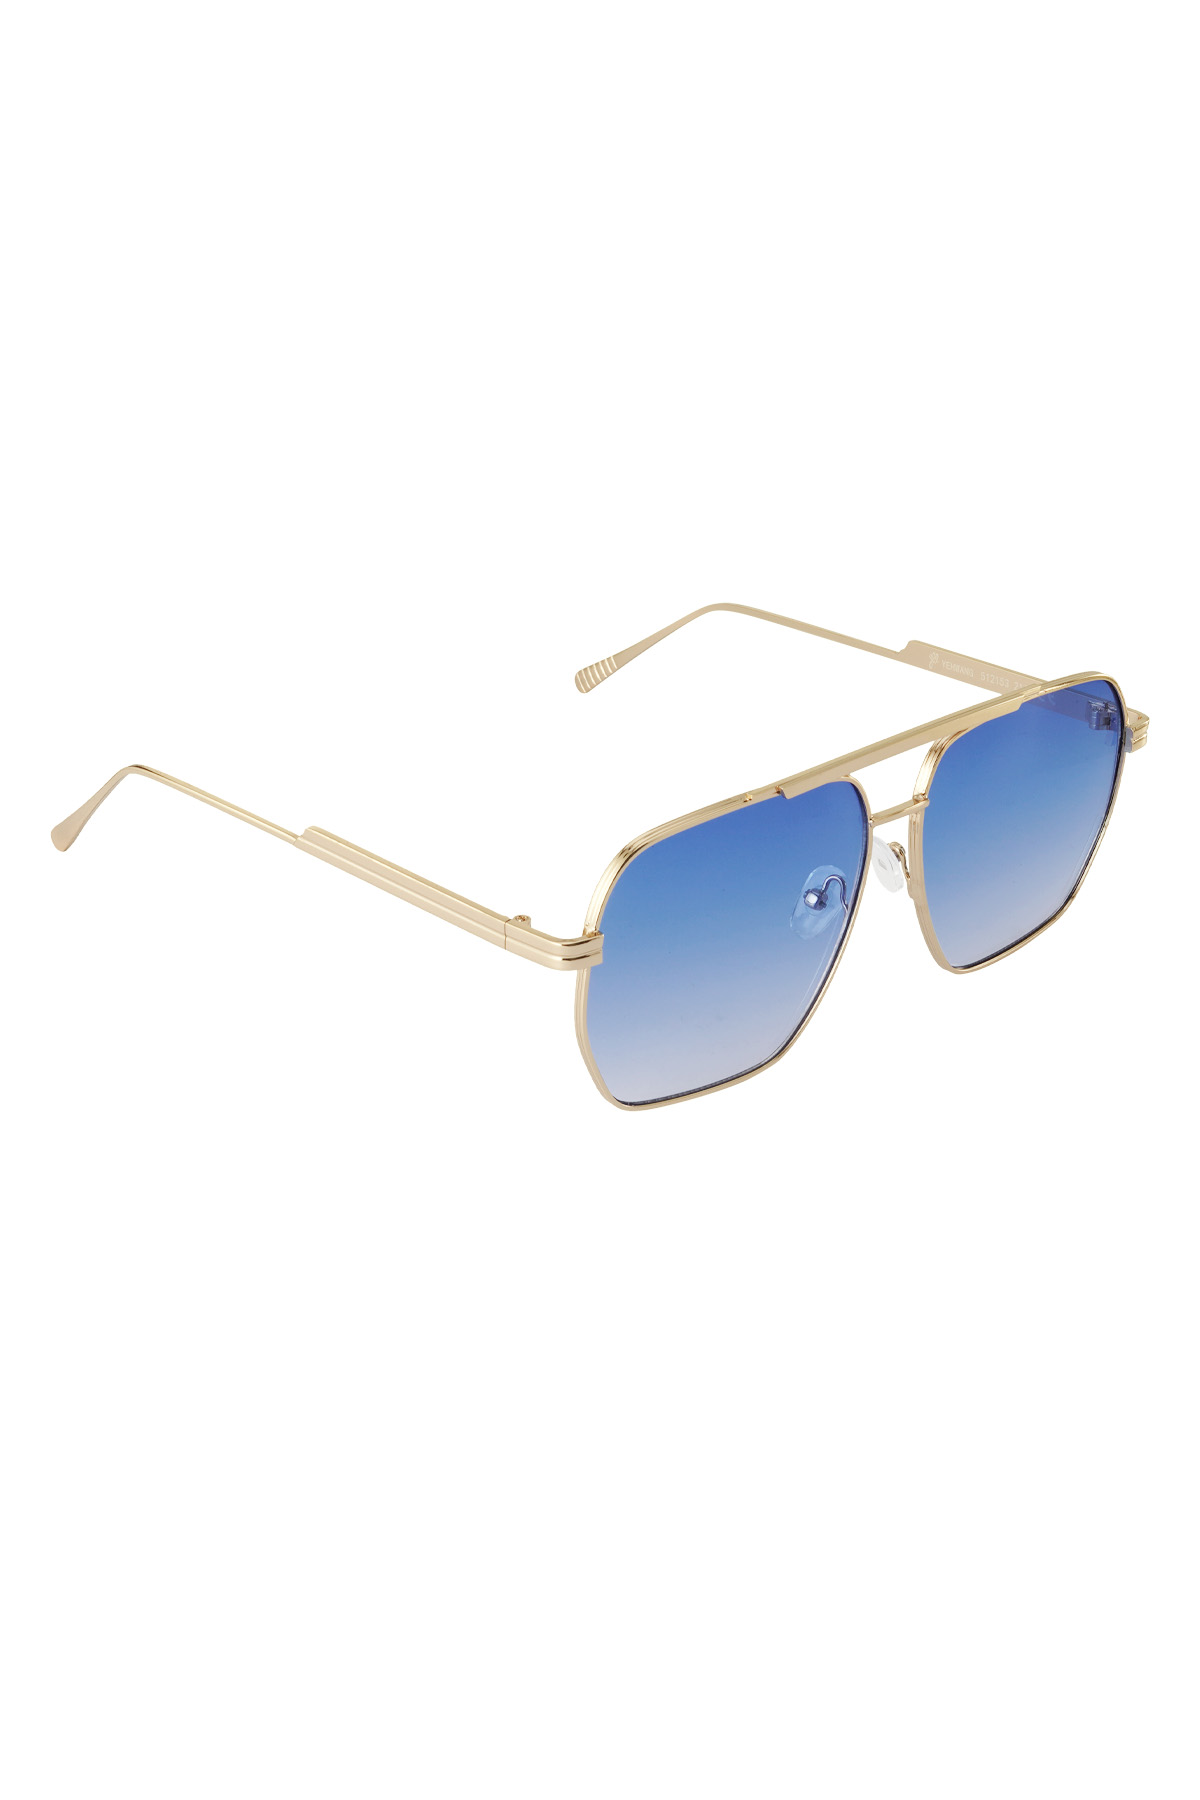 Metal yazlık güneş gözlüğü - Mavi ve altın rengi h5 